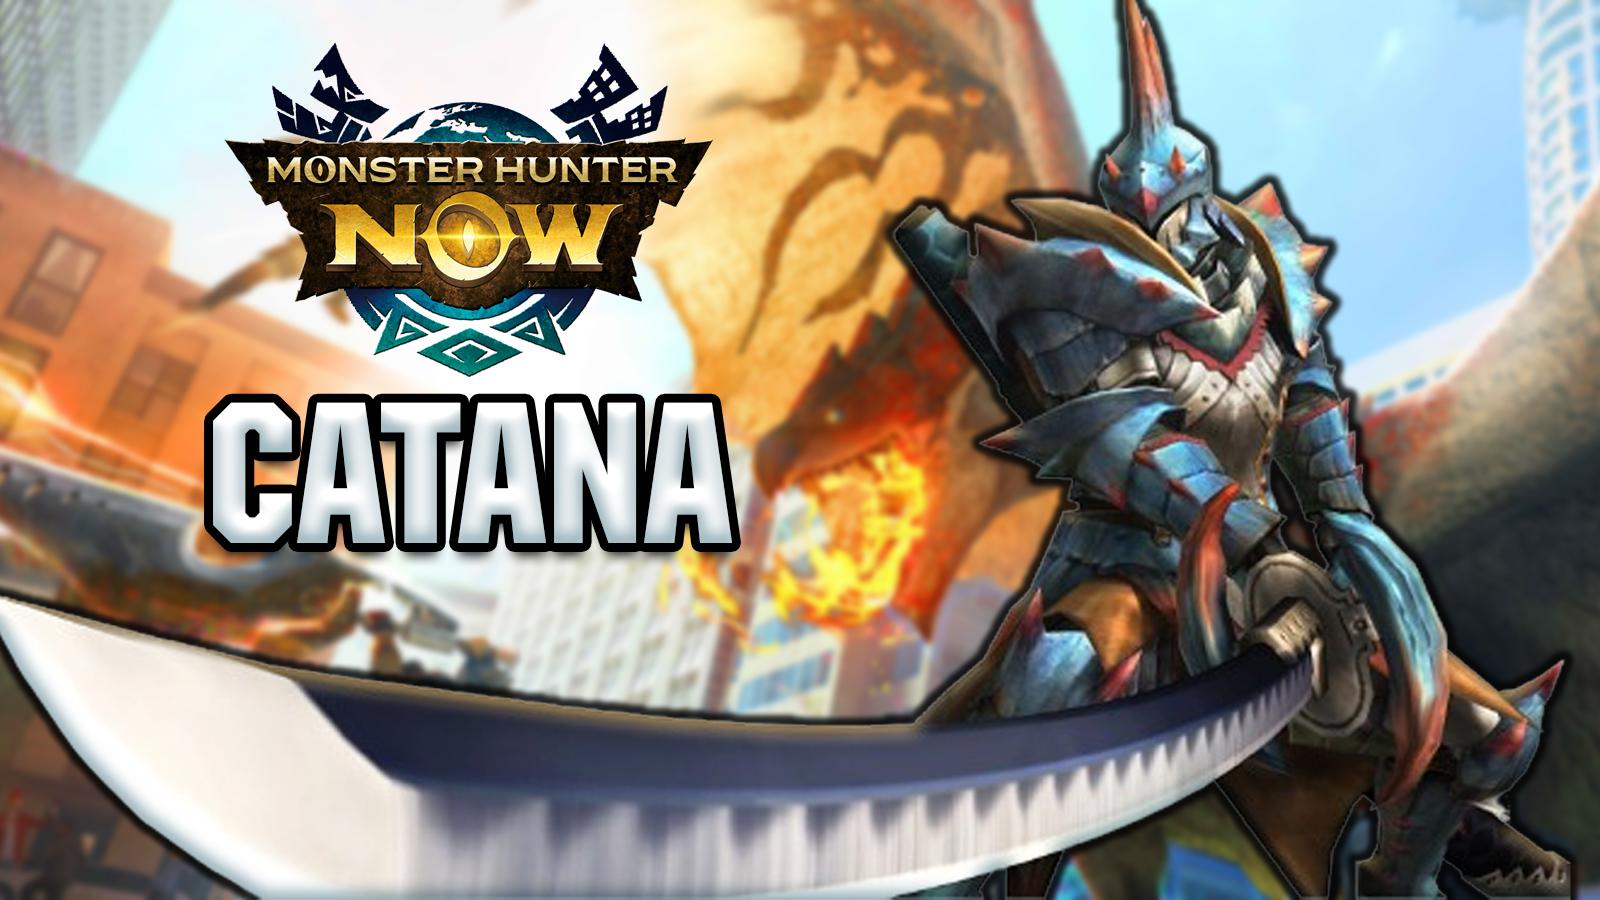 catana monster hunter now